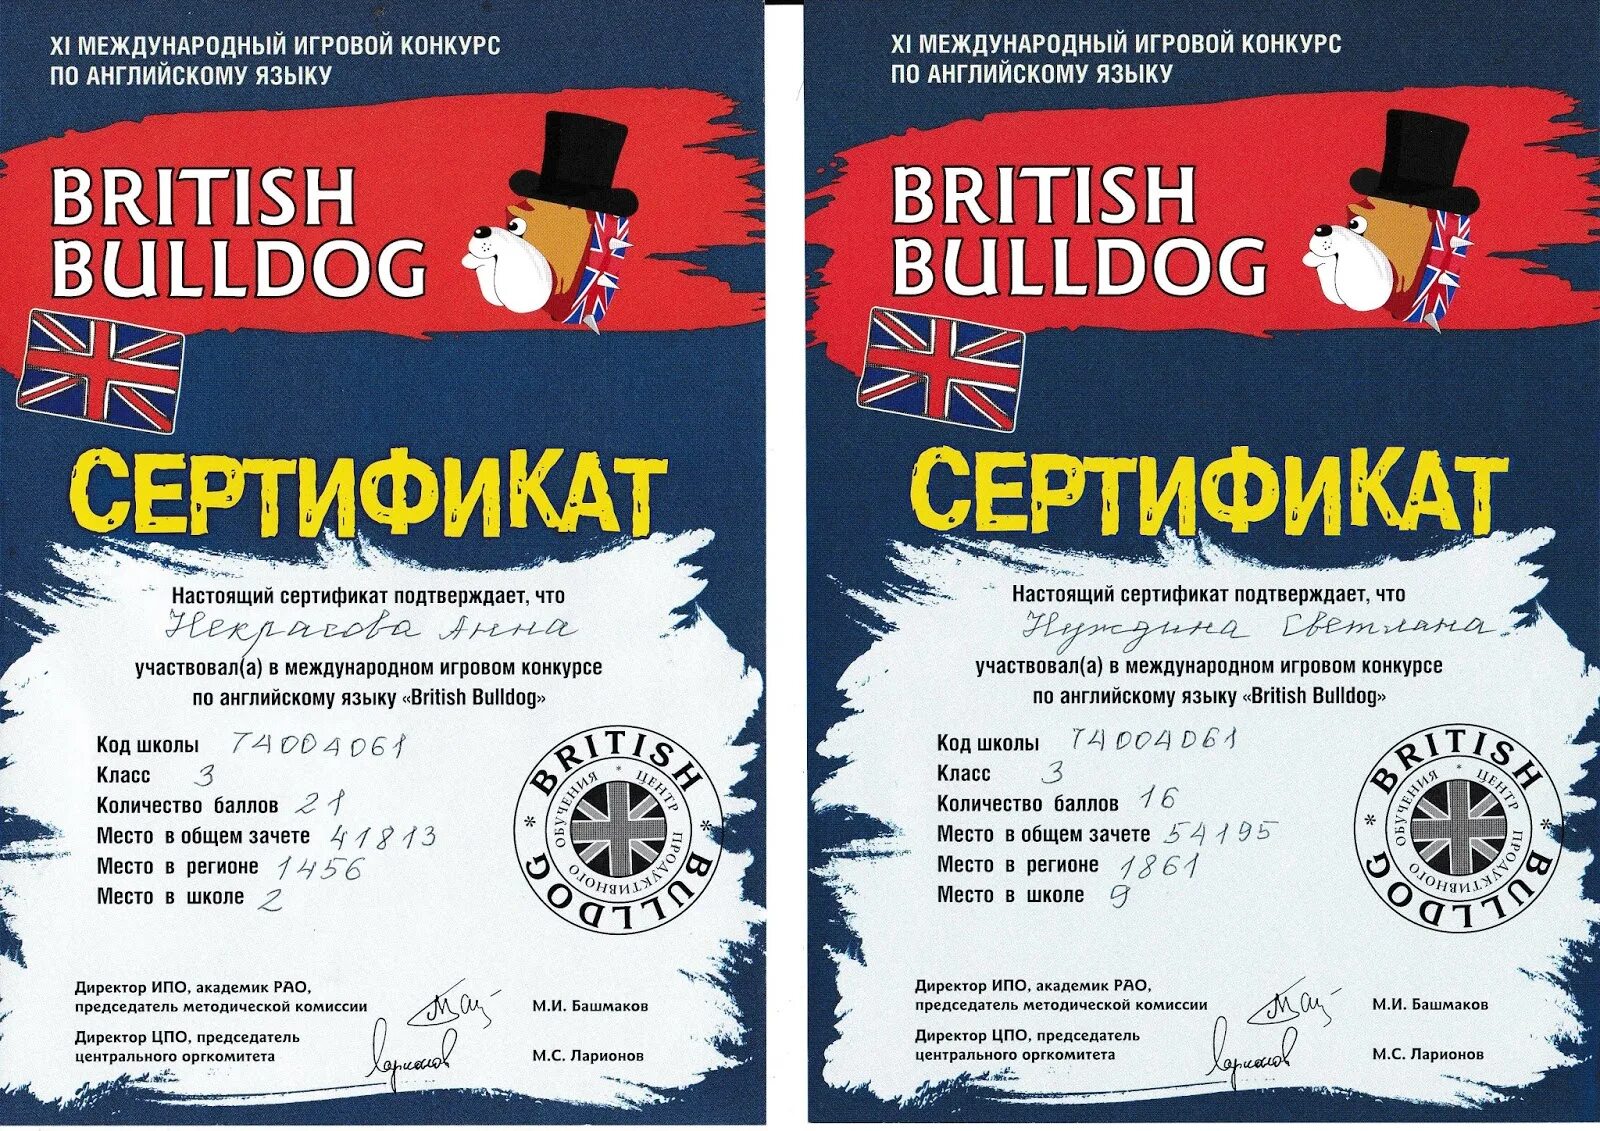 Конкурсы на английском языке перевод. Бритиш бульдог сертификаты 2021. British Bulldog сертификат. Британский бульдог грамота.